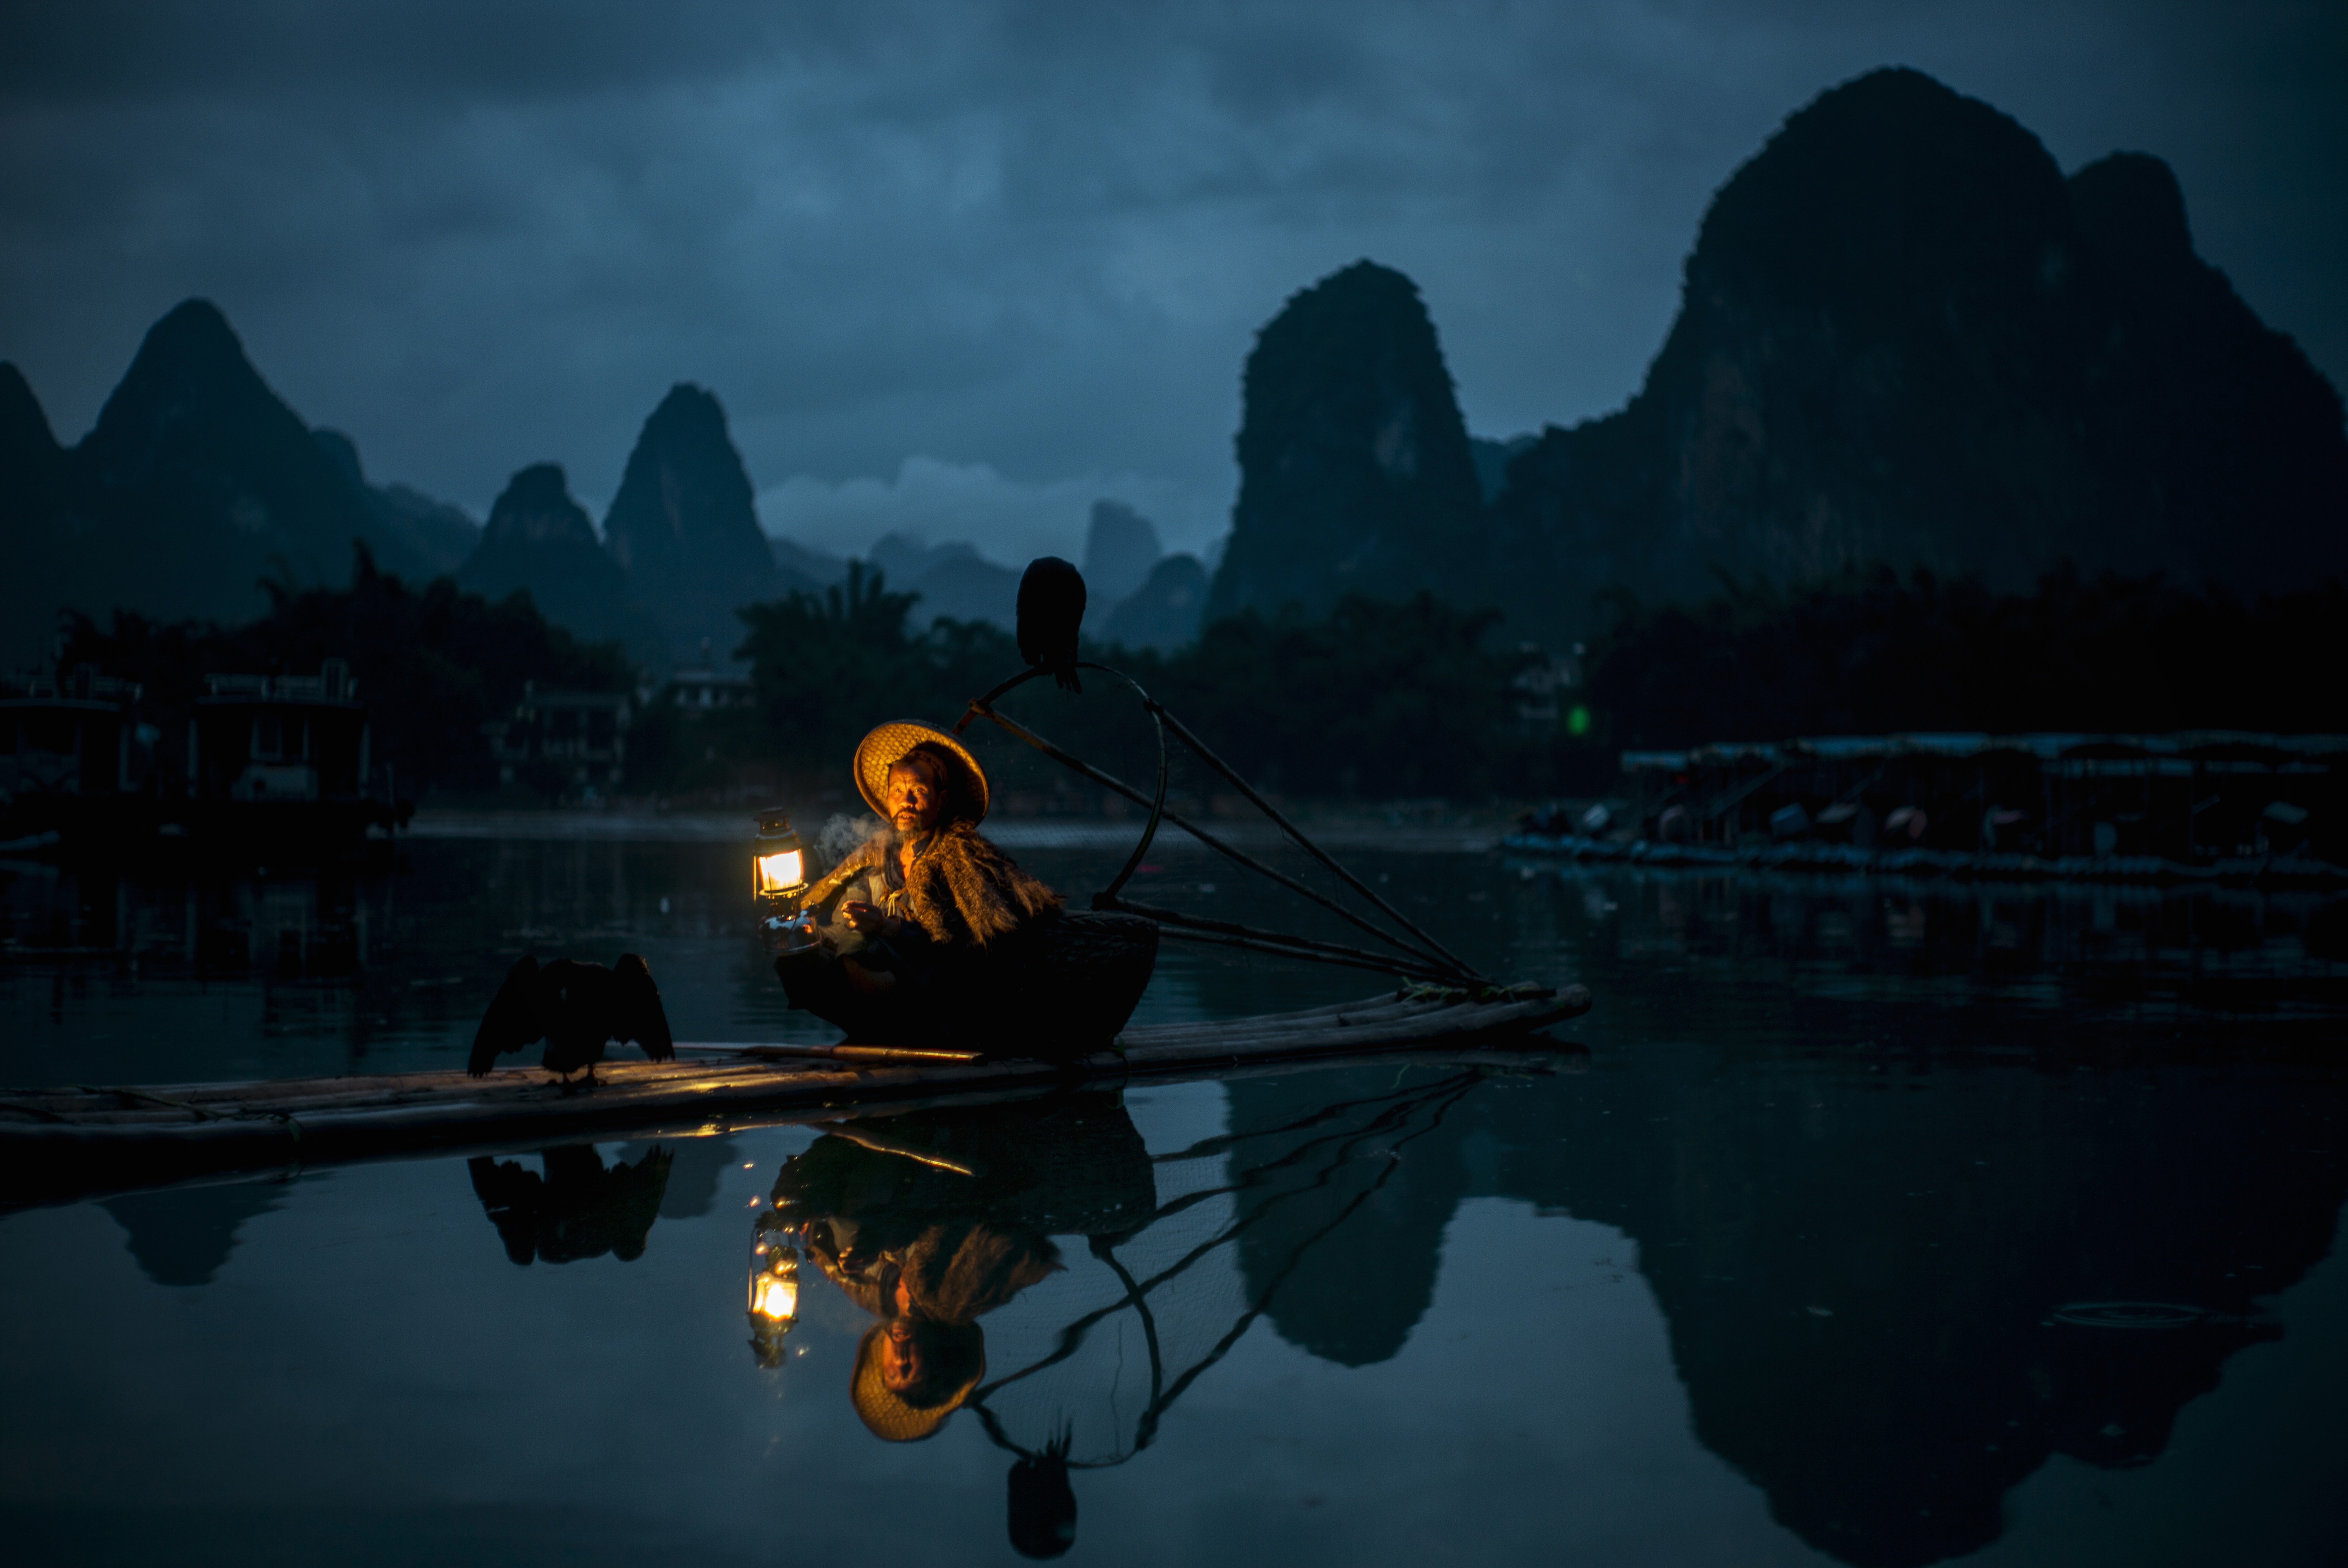 Photo of China by lingfeng yang